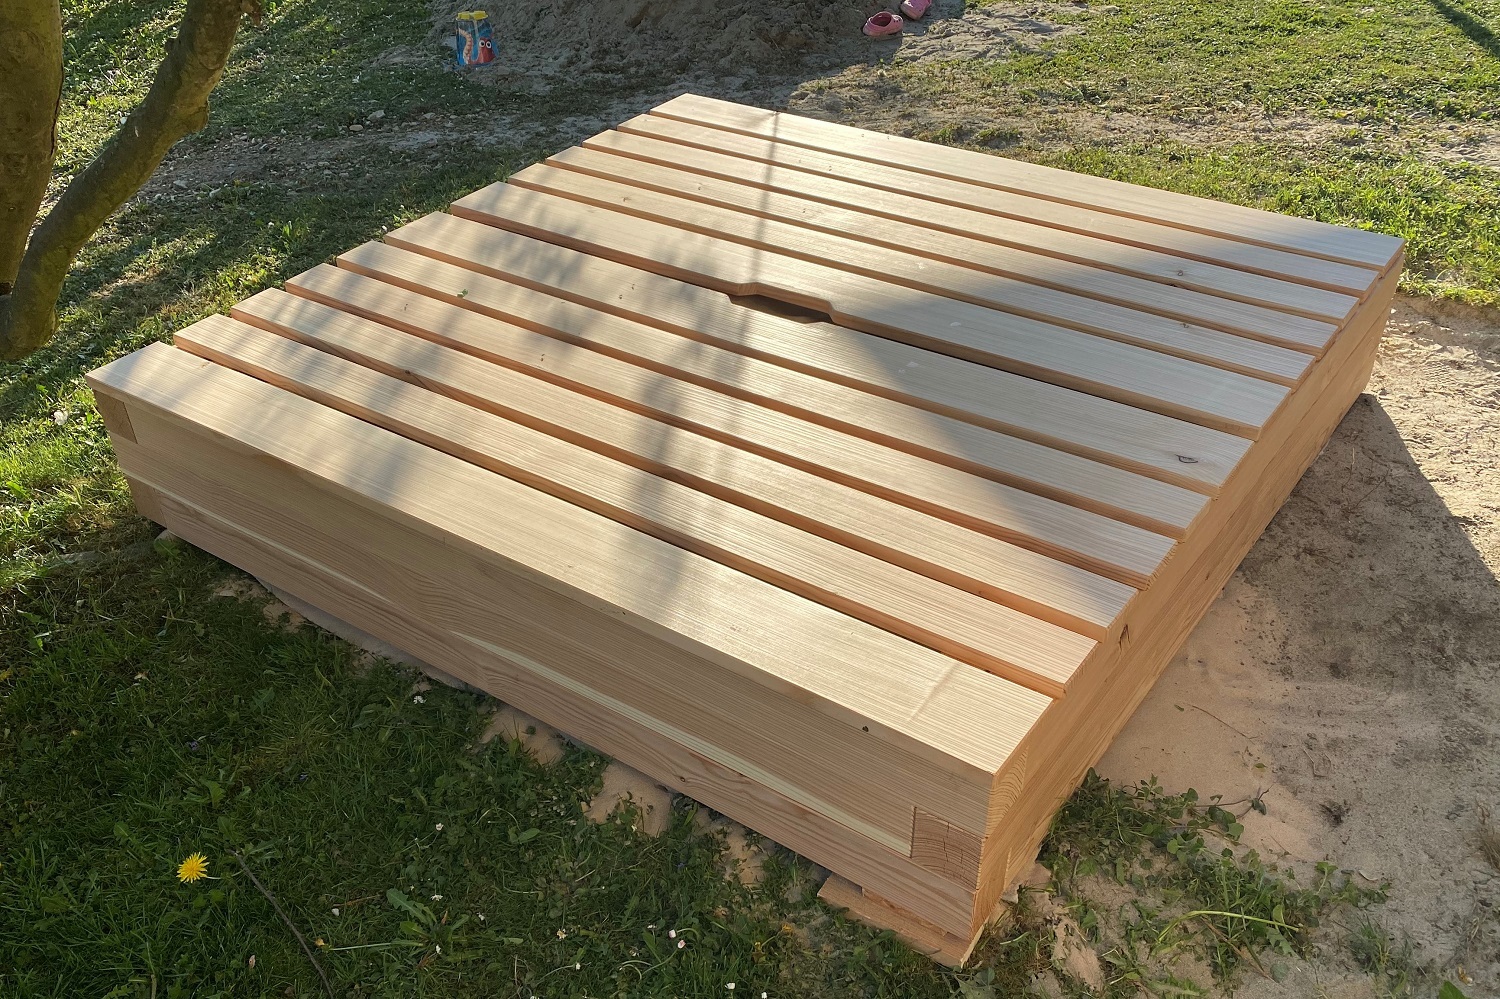 Sandkasten aus Schweizer Holz inkl. Füllung